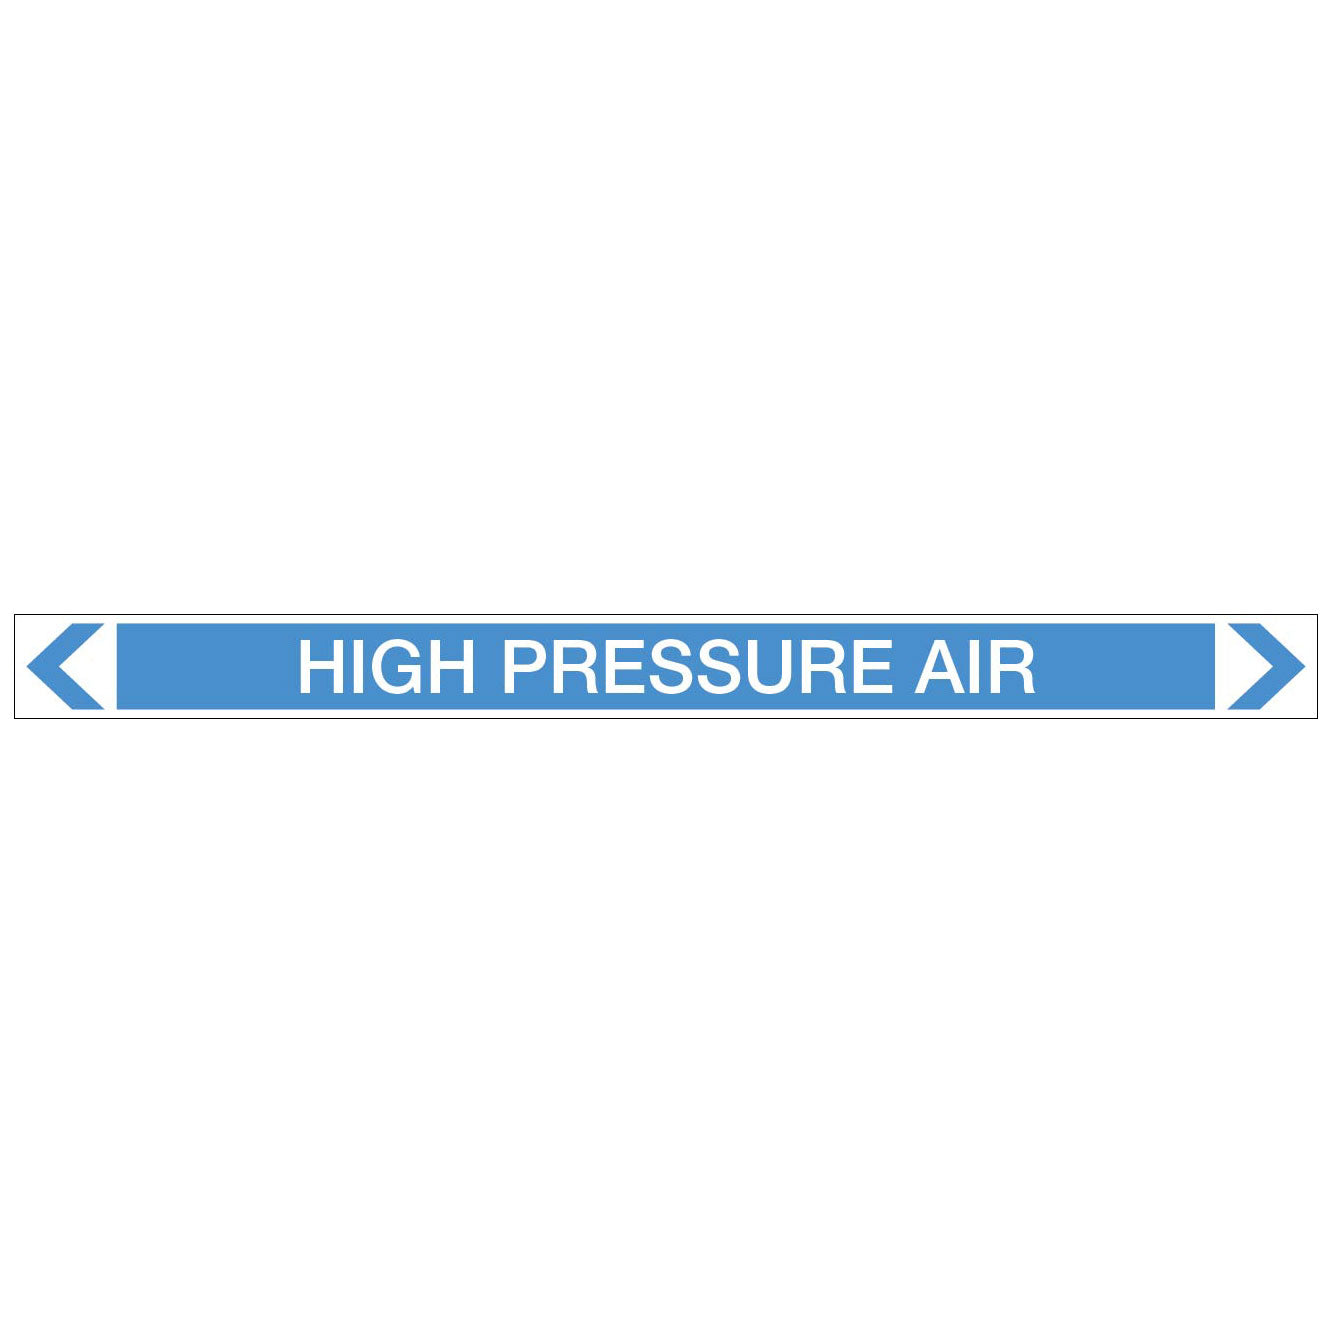 Air - High Pressure Air - Pipe Marker Sticker